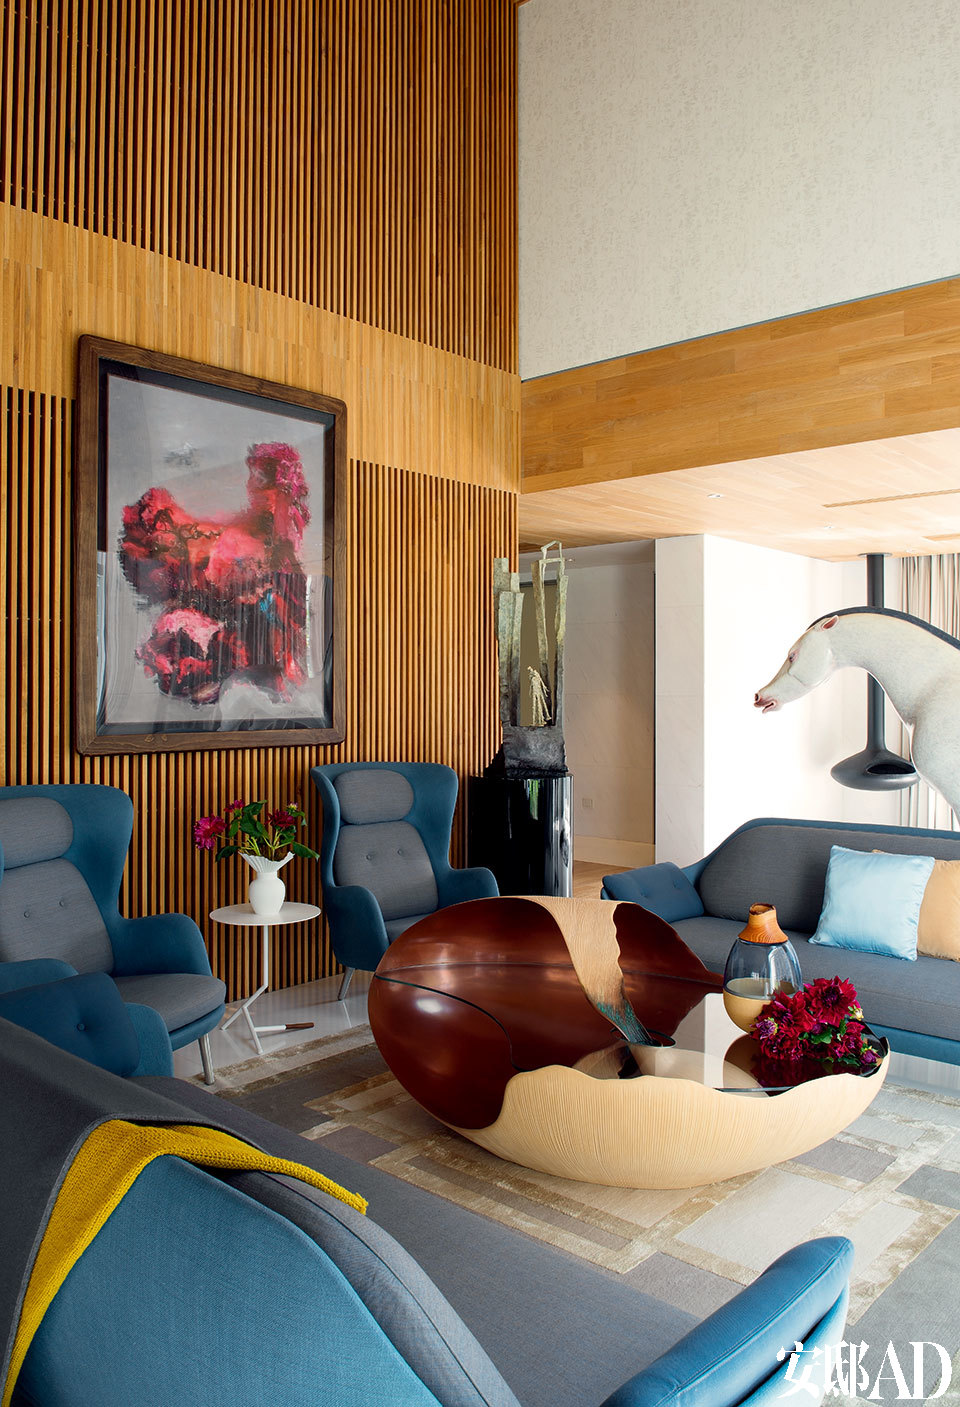 木格栅是贯穿整个家的主题，温暖着大空间，也调节着小视线。客厅的沙发区，沙发与两只扶手椅均为Publicof Fritz Hansen品牌，购自设计共和，Mollusque艺术茶几由Marc Fish设计，在铸好的铜模上贴了上千片梧桐木皮制成。地毯来自The Rug Company，木格栅上的画作是周春芽的“石头”系列，创作于1999年。画作右侧的青铜雕塑来自法国女艺术家瓦儿（Val），画作下方的白色茶几由Brad Ascalon设计，同样来自Ligne Roset写意空间。